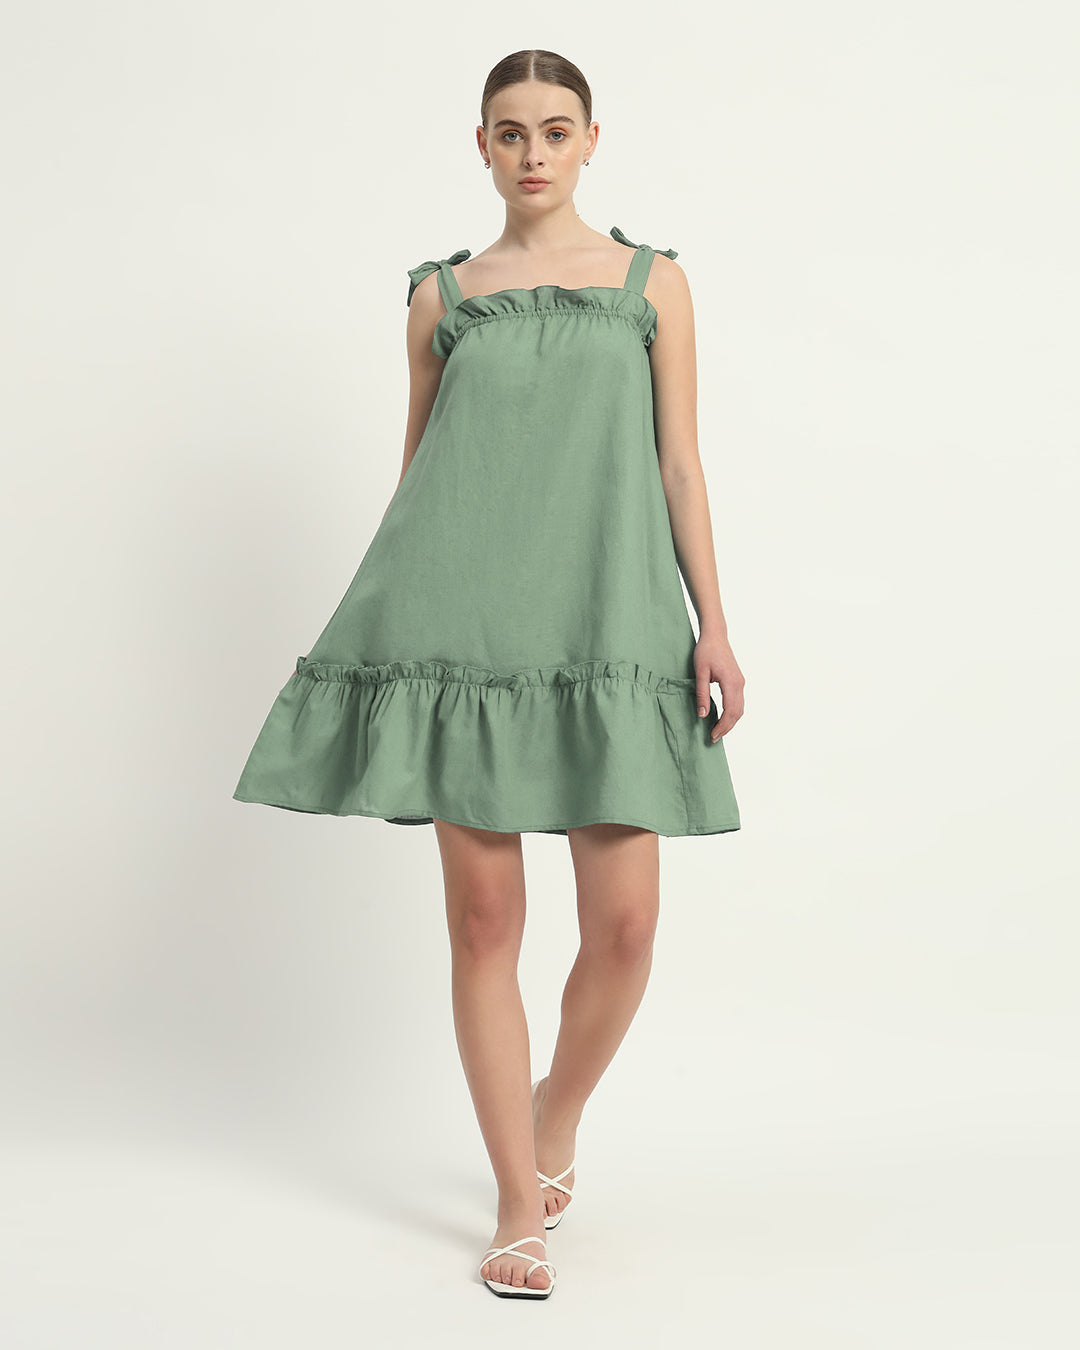 The Amalfi Mint Cotton Dress